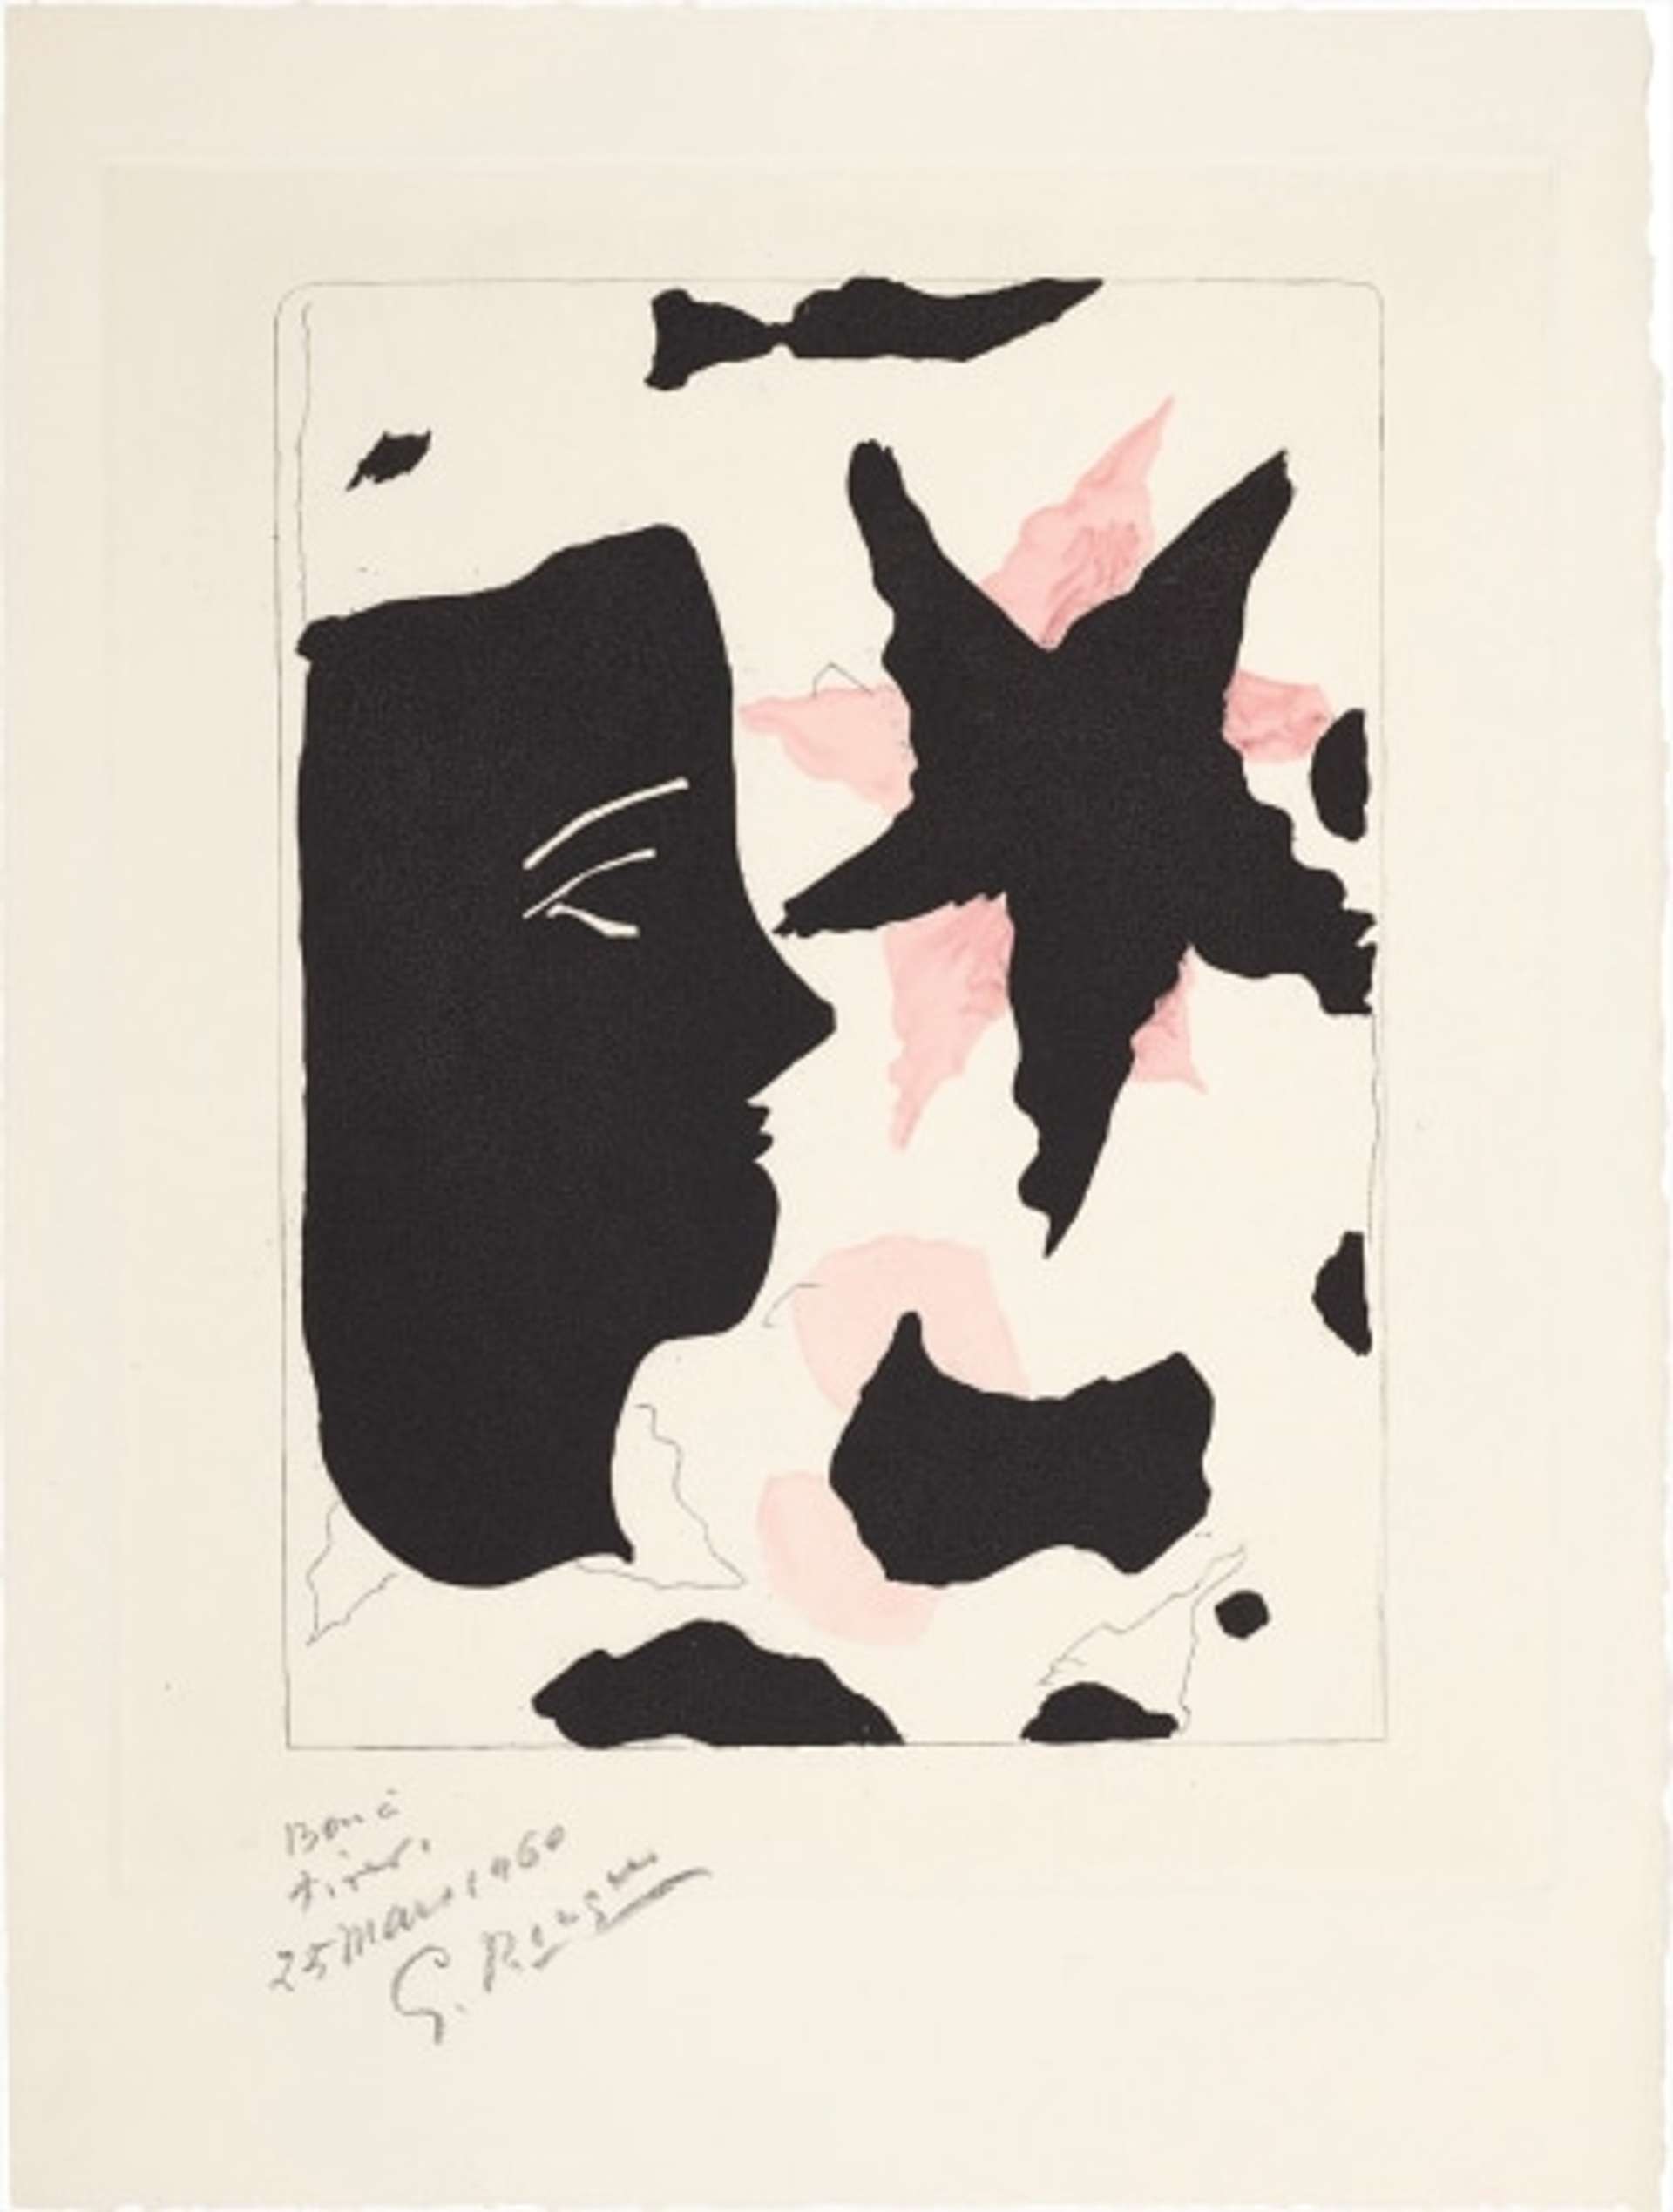 Tête En Profil Et L'Étoile - Signed Print by Georges Braque 1960 - MyArtBroker